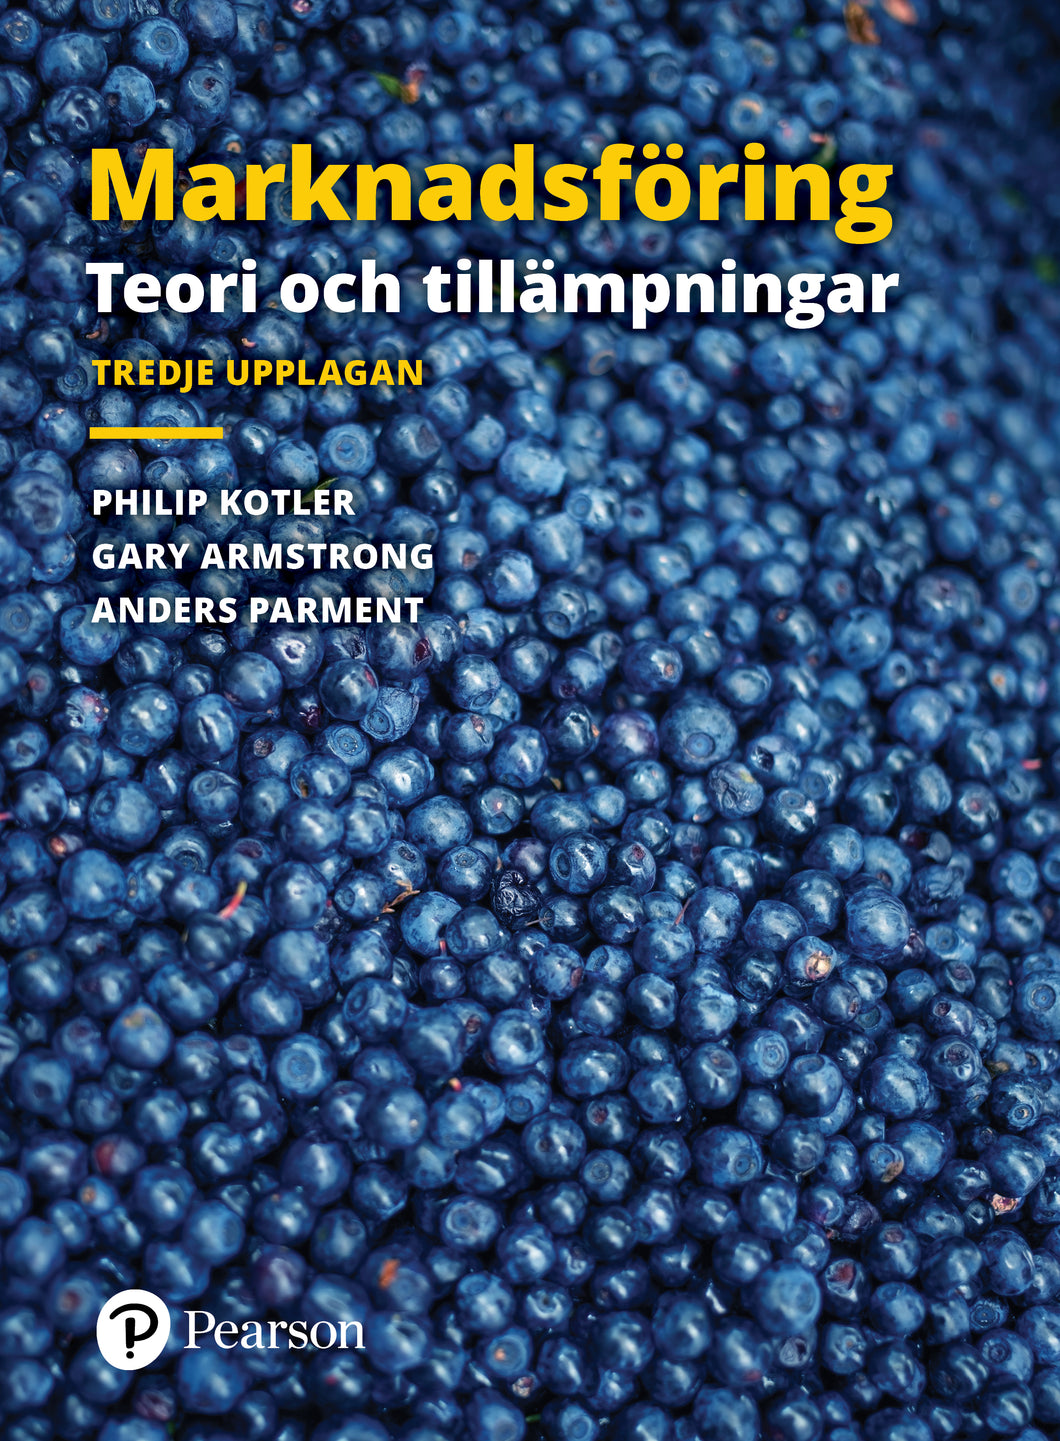 Marknadsföring: Teori och tillämpningar 3rd Scandinavian Edition. E-Learning with e-book,  Pearson Horizon